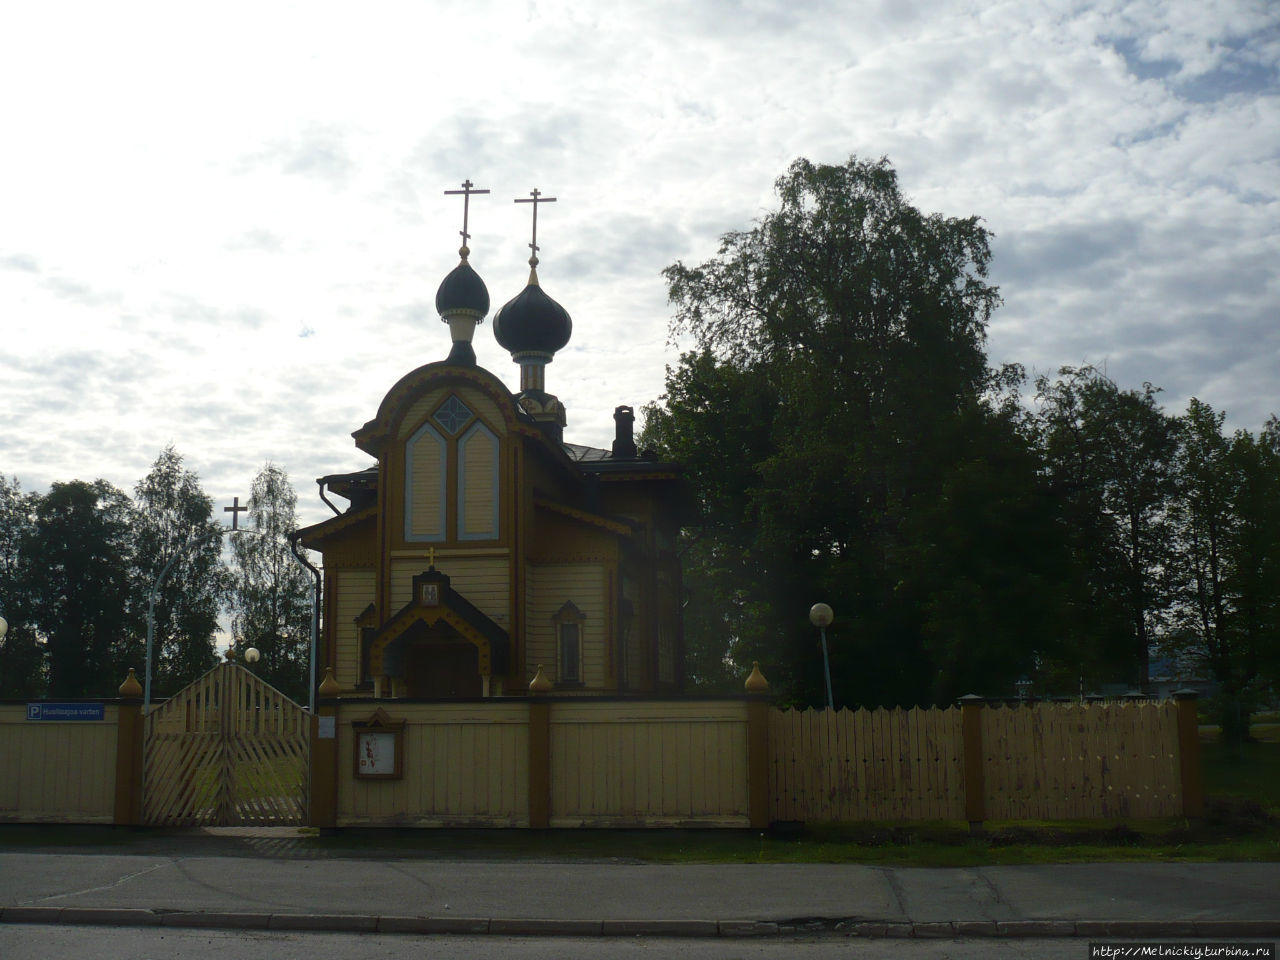 Церковь Апостолов Петра и Павла Торнио, Финляндия